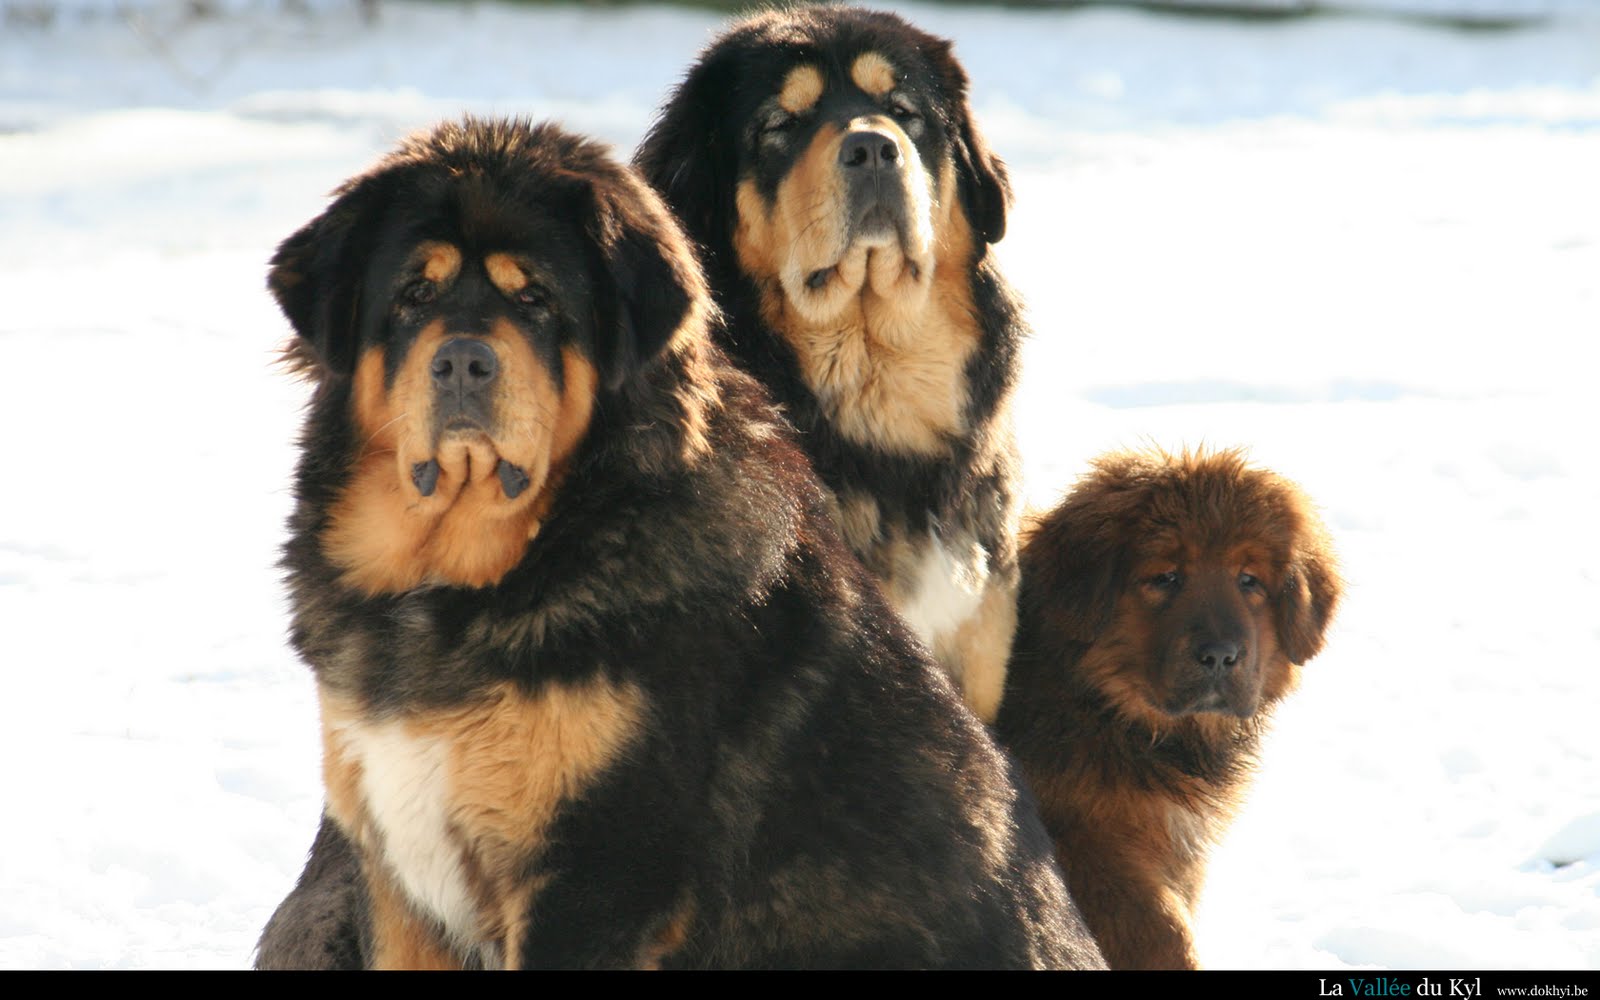 Tibetan Mastiff Dog